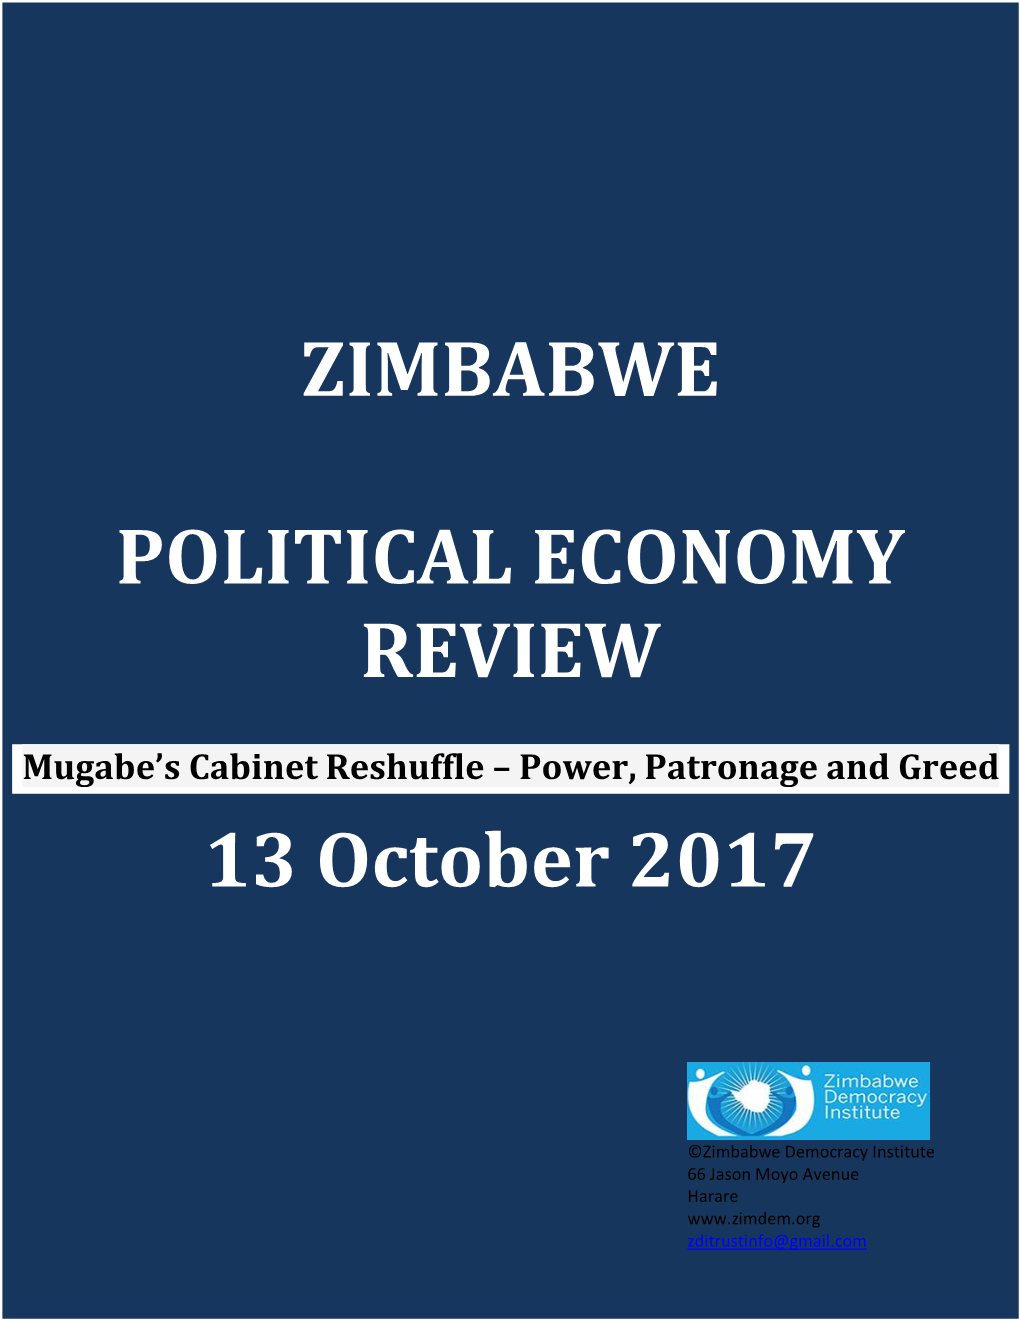 ZIMBABWE POLITICAL ECONOMY REVIEW 13 October 2017